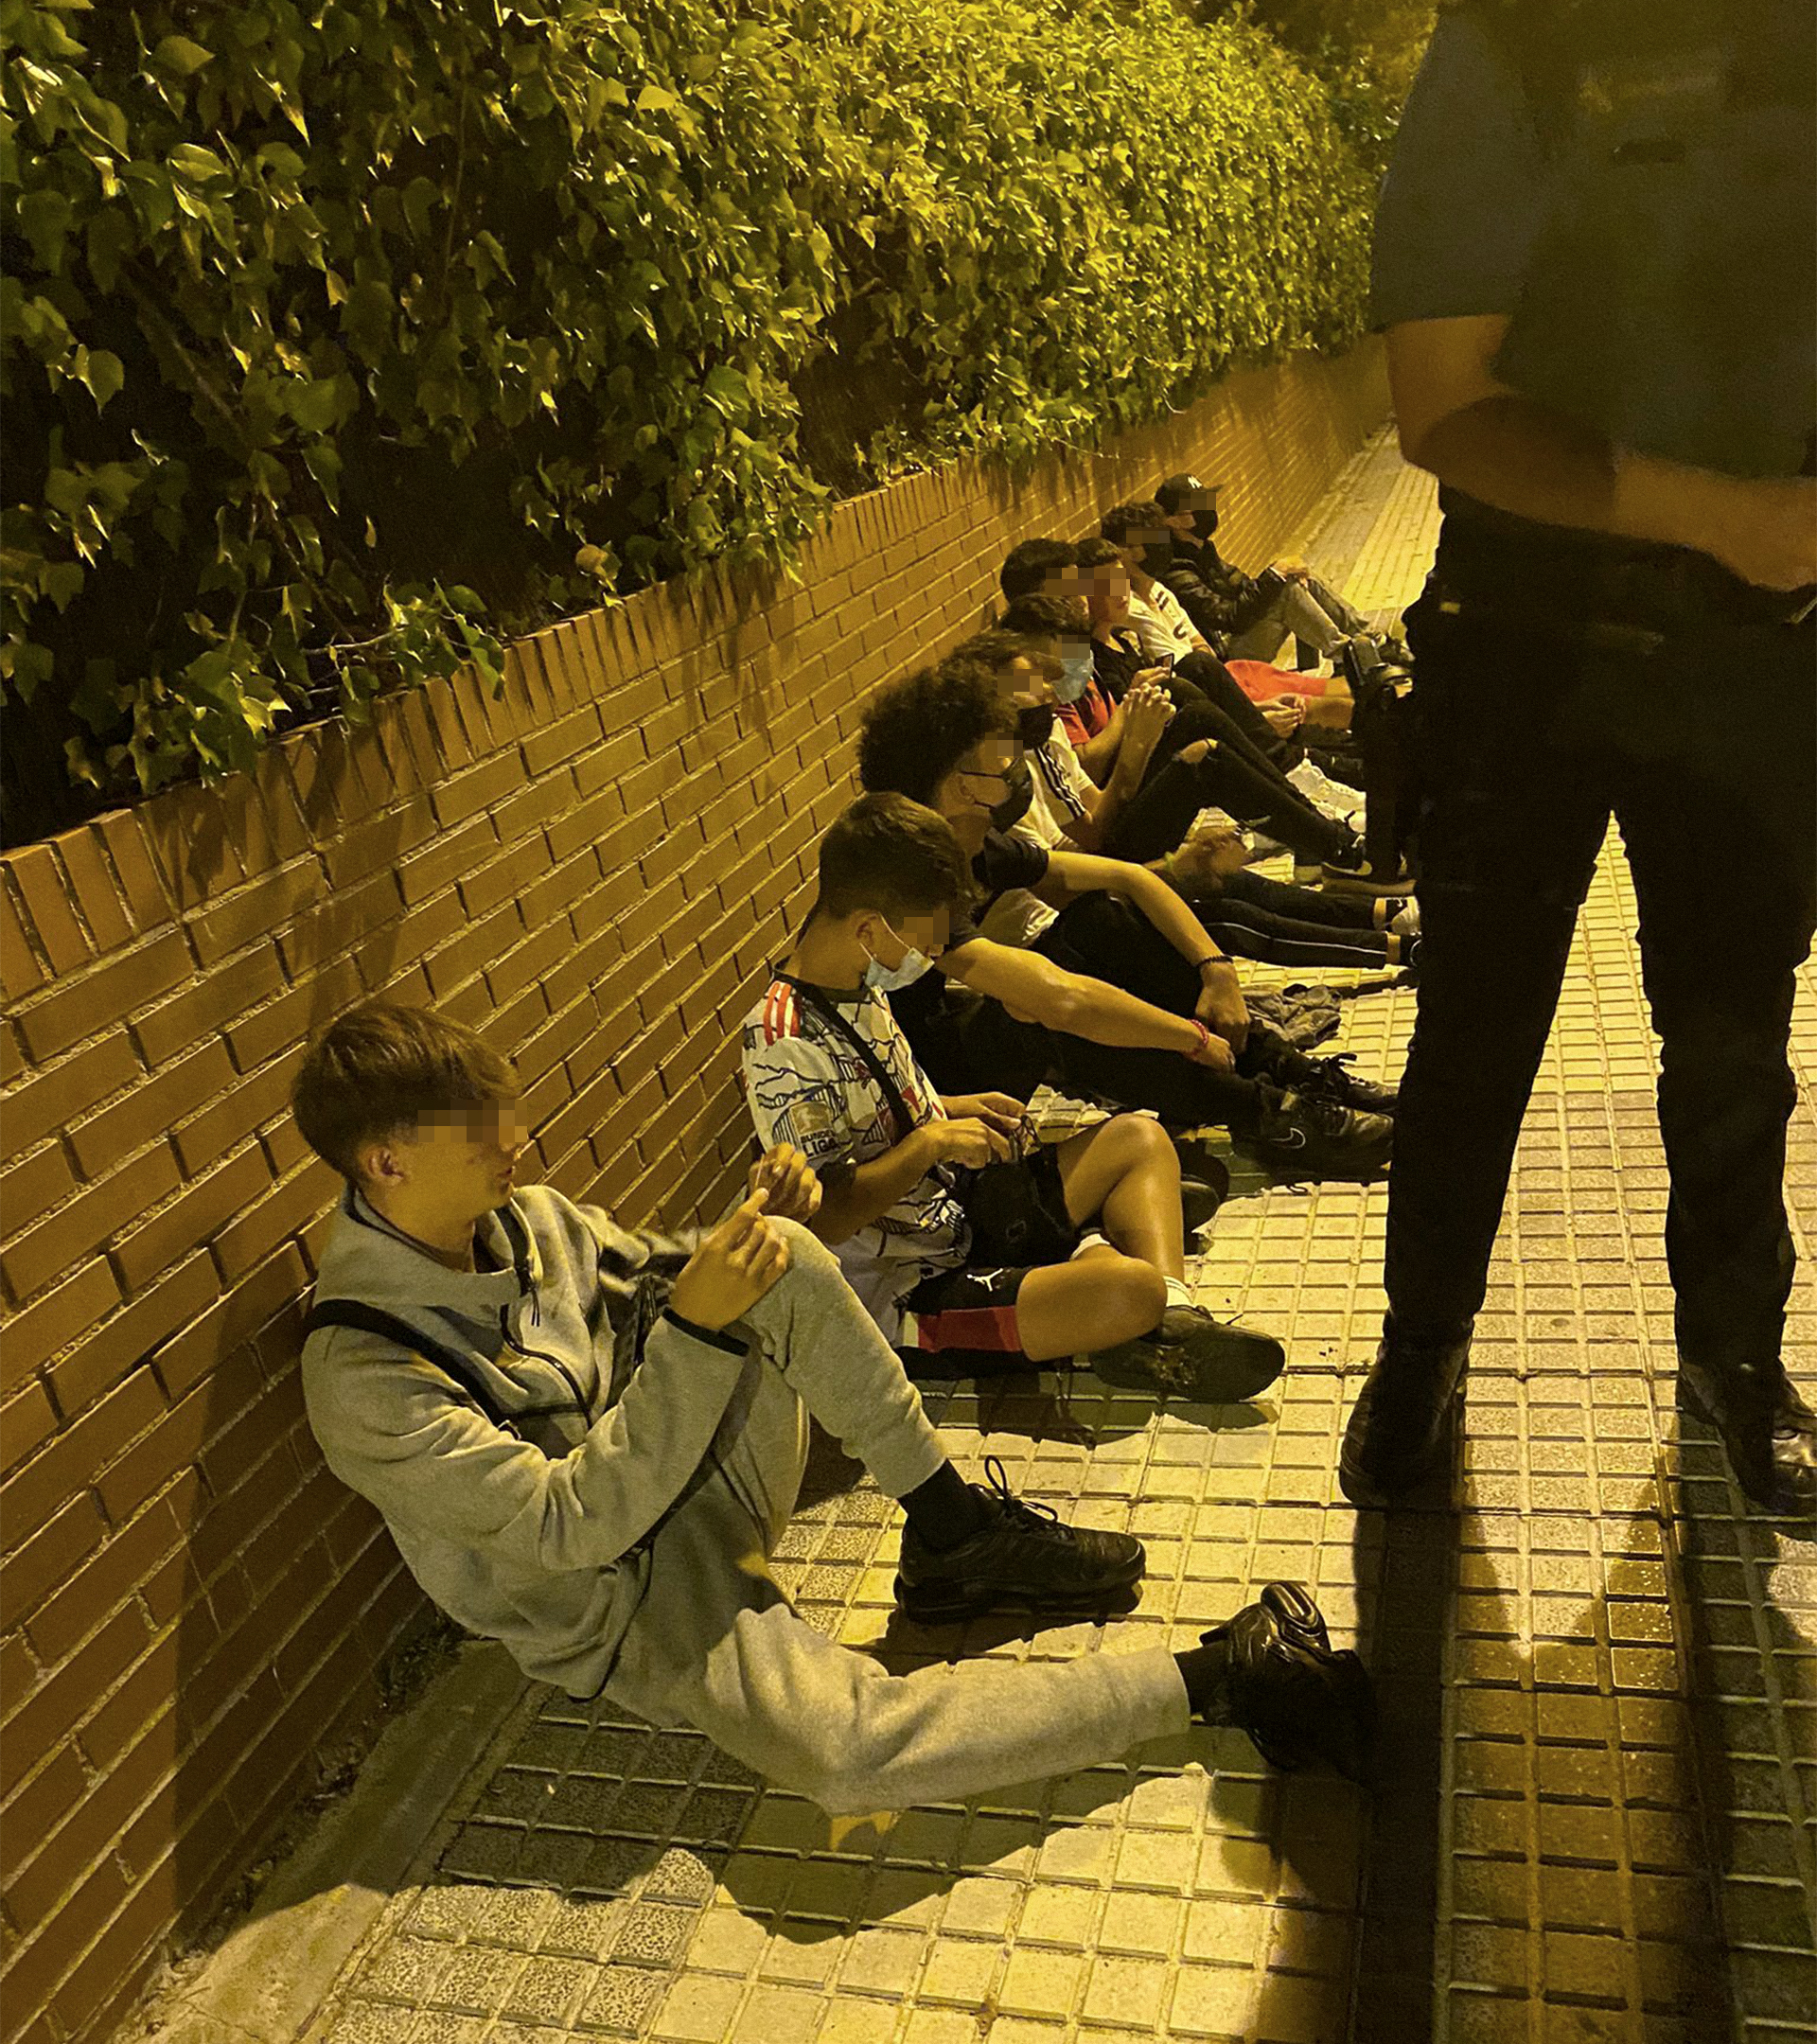 La banda del botellón que amenaza Madrid: delincuentes muy jóvenes, portan machetes y cuentan con chicas entre sus miembros